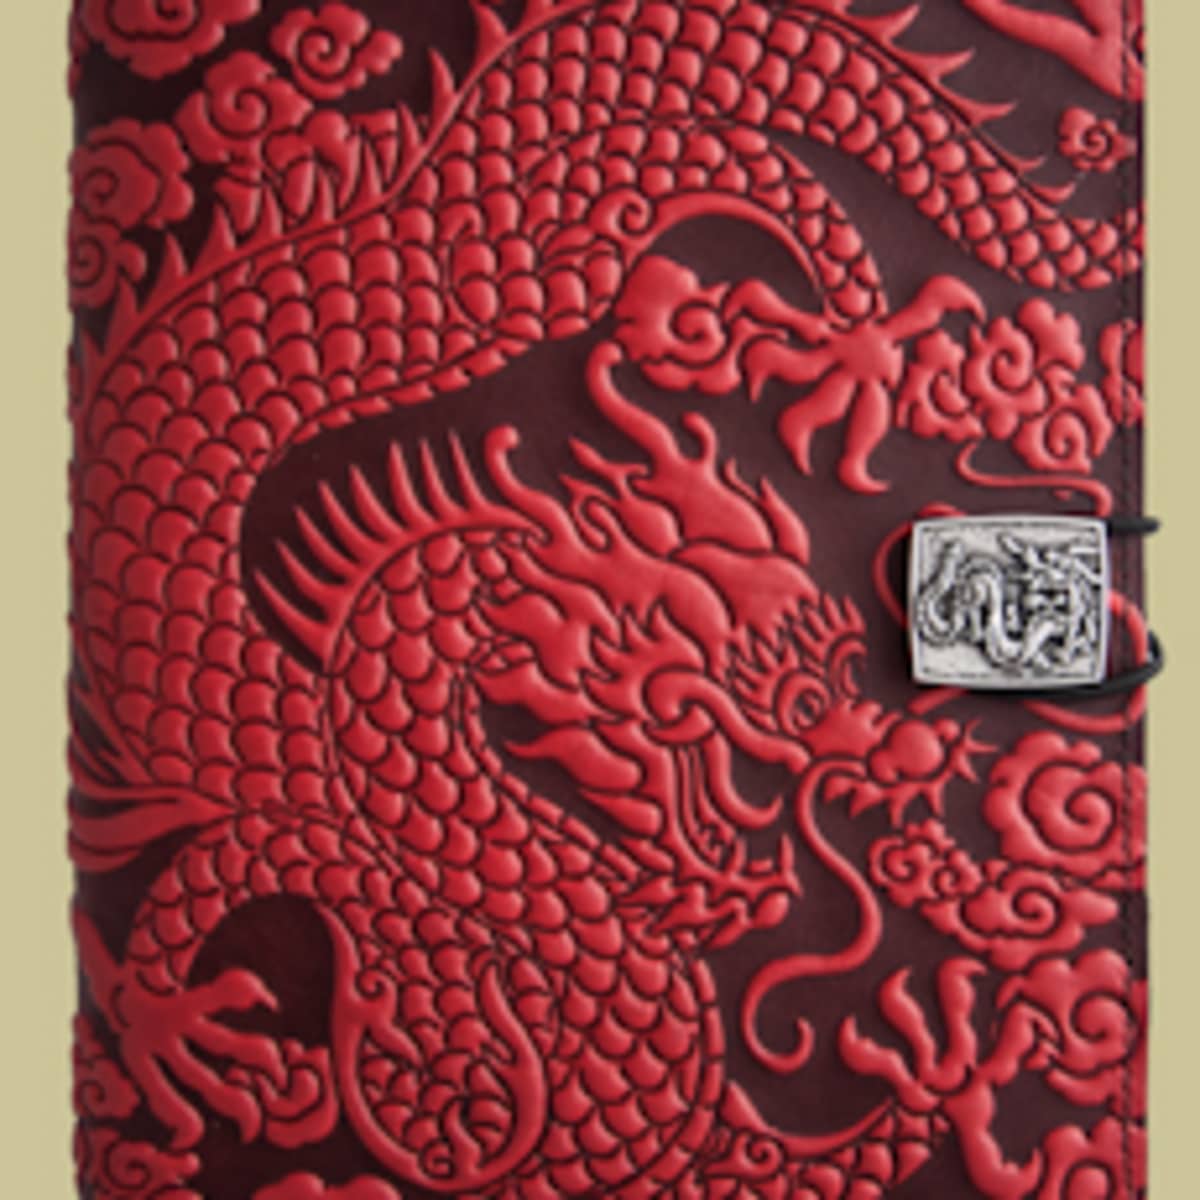 Oberon Design Leather Checkbook Cover